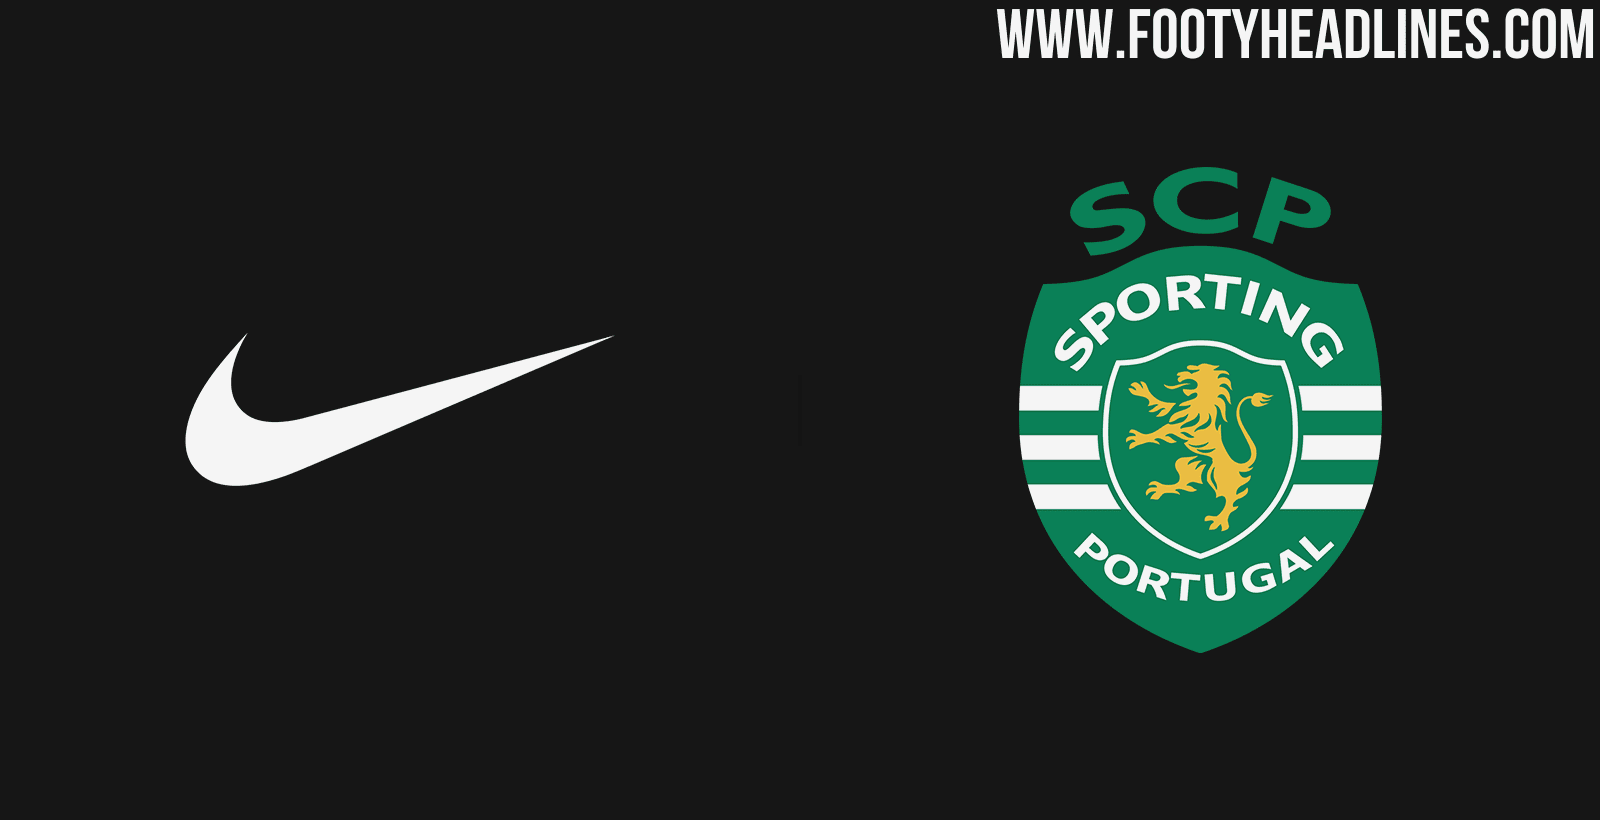 T sporting com. Спортинг эмблема. ФК Спортинг. Спортинг Лиссабон. Спортинг (футбольный клуб, Лиссабон).